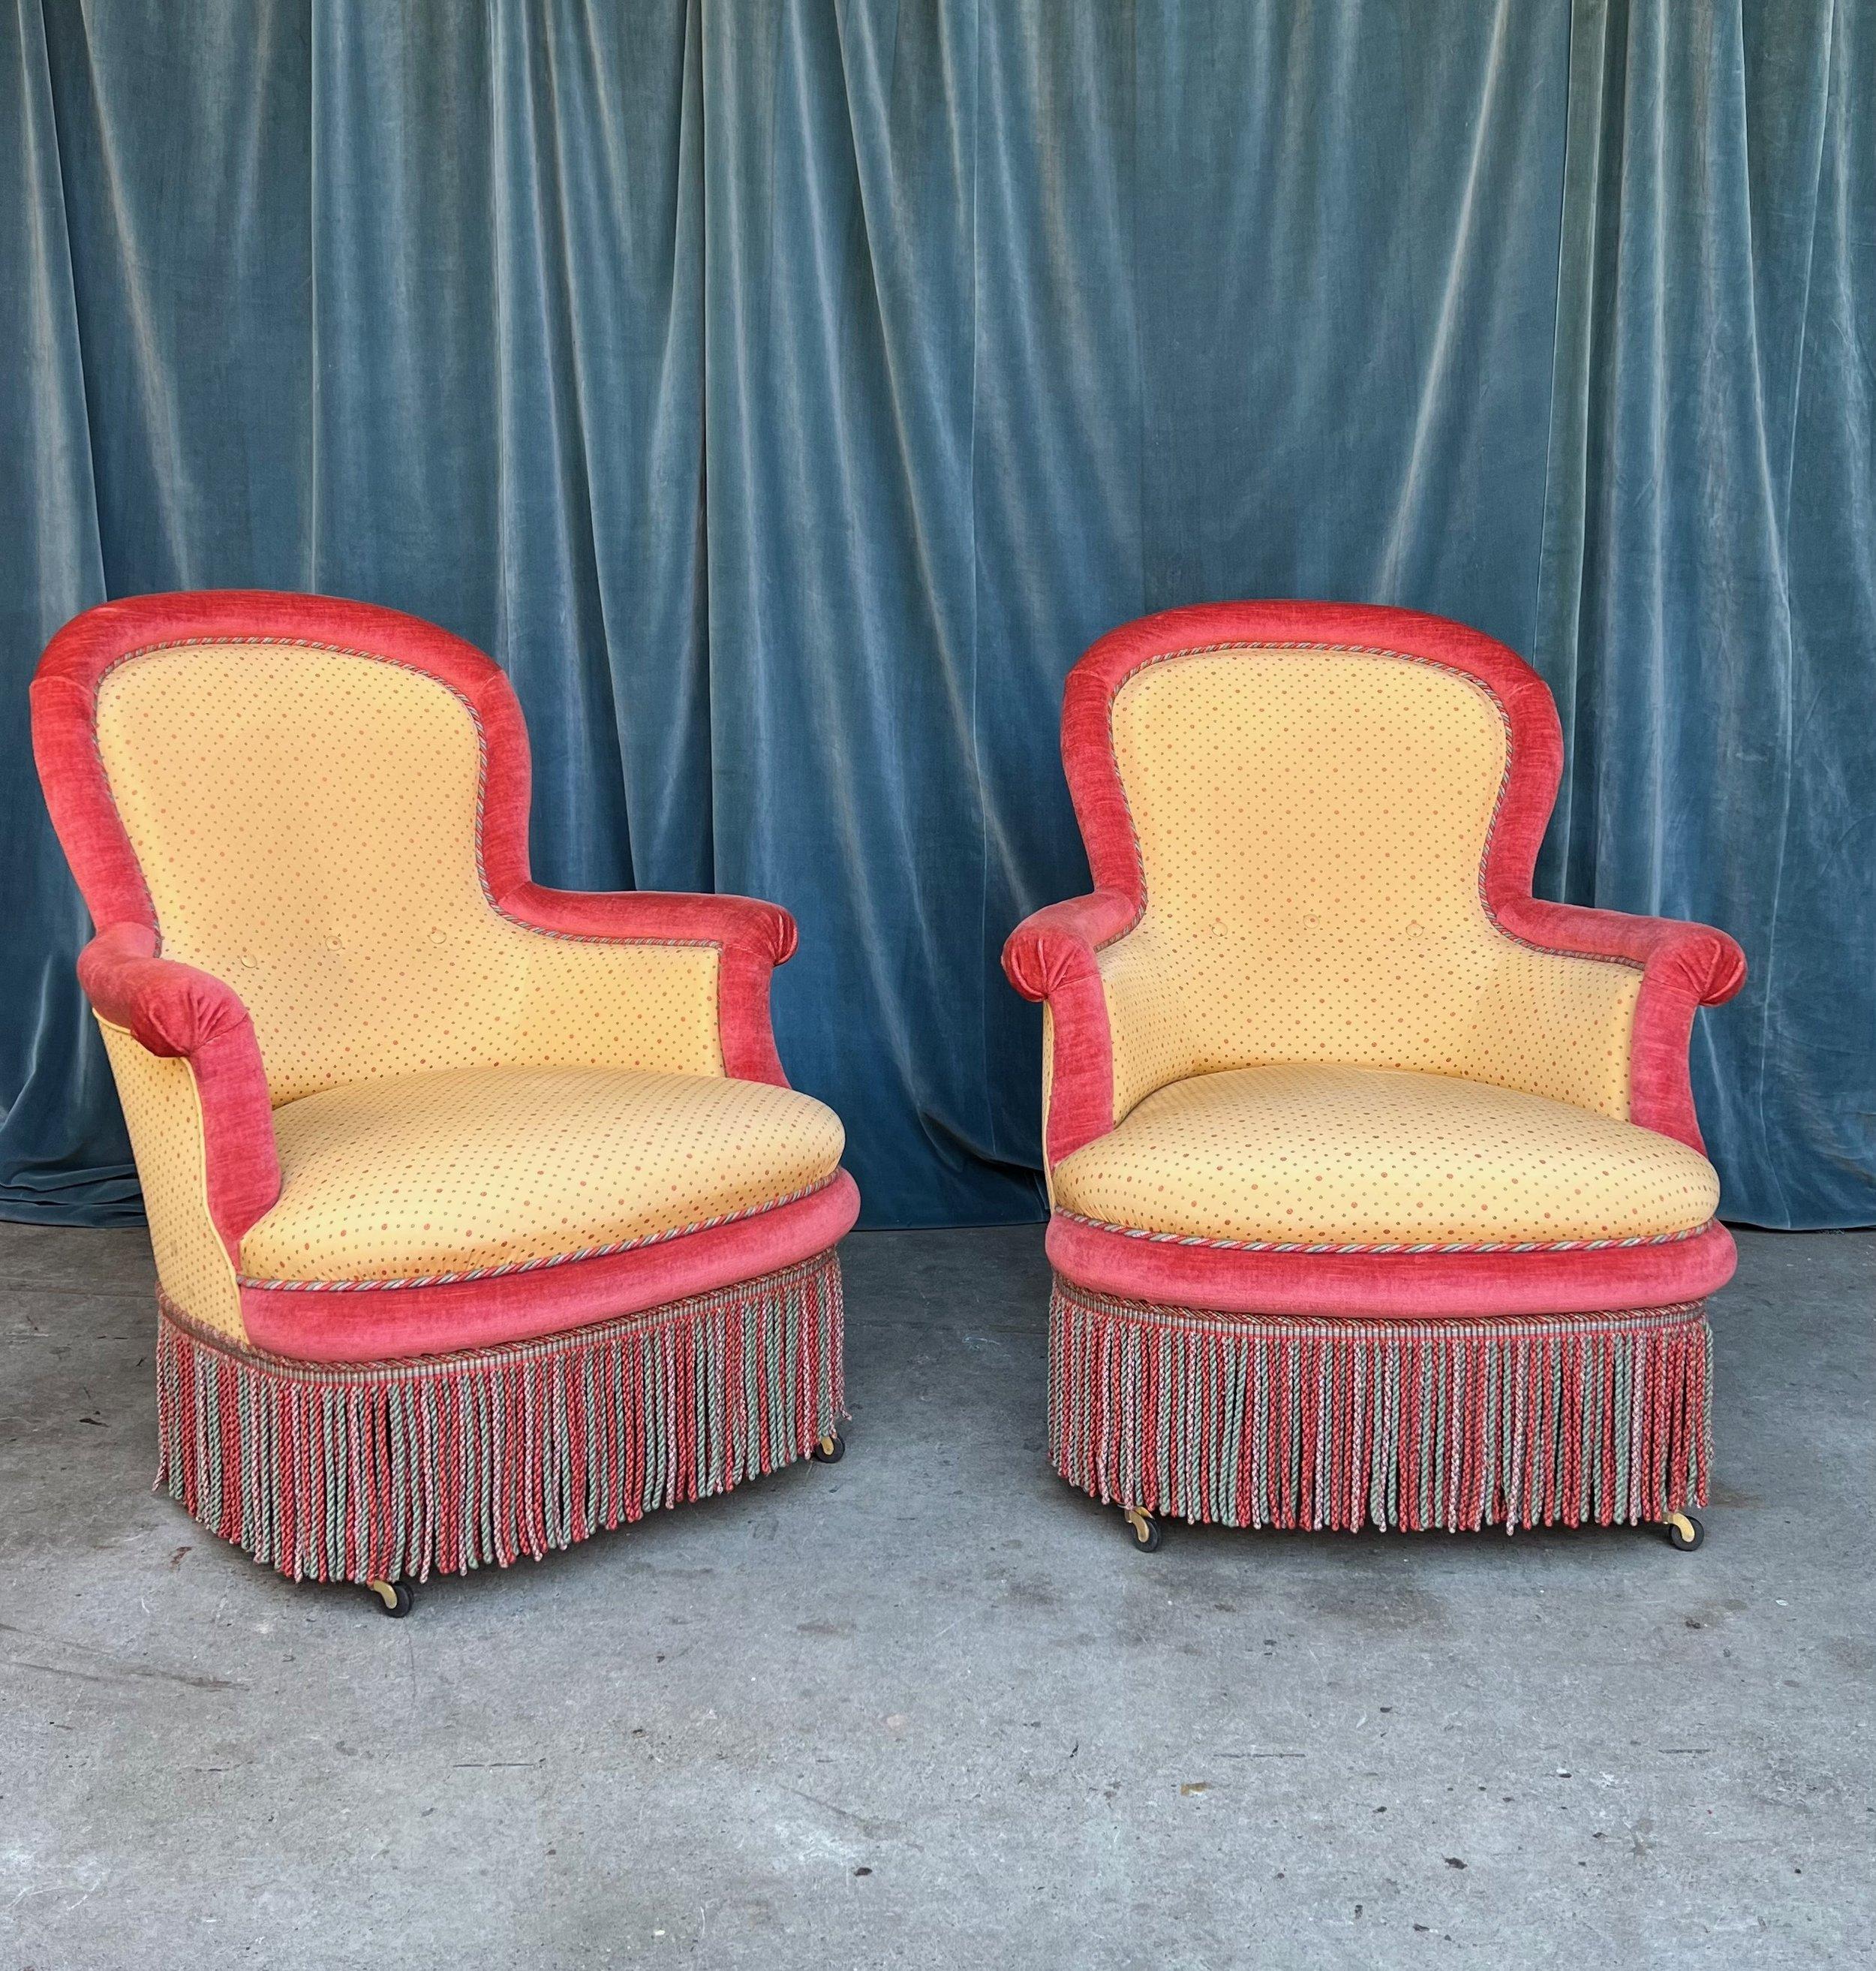 Une paire unique et colorée de fauteuils Napoléon III français du 19ème siècle, tapissés d'un tissu à motifs jaune d'or et d'un velours rouge contrasté, avec des franges multicolores pour une touche finale opulente. Nous avons ajouté des caaters aux